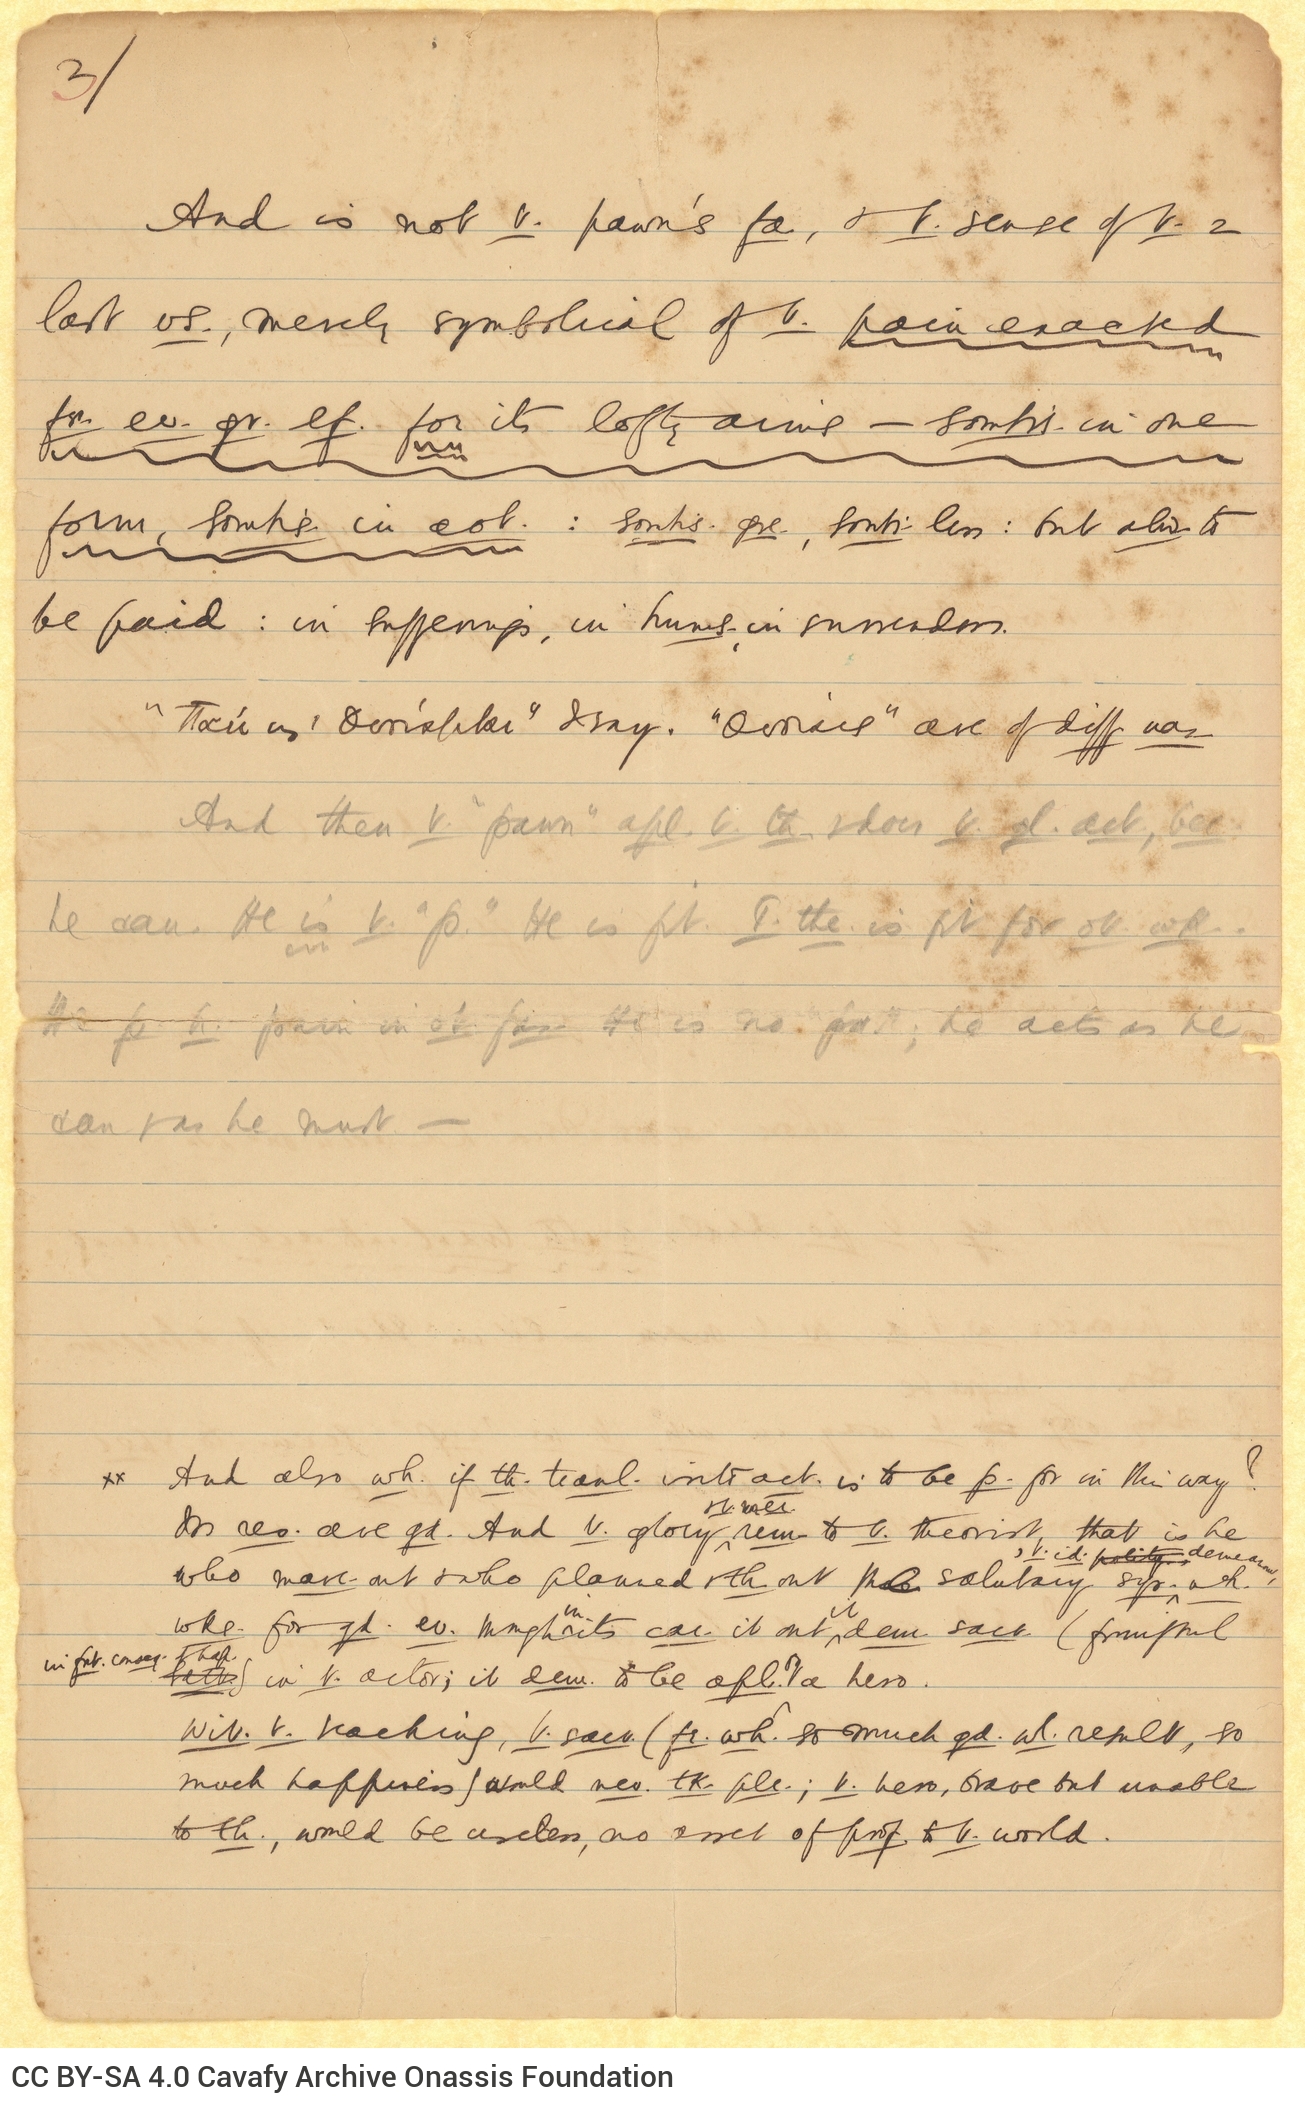 Χειρόγραφο πεζό κείμενο του Καβάφη στις δύο όψεις δύο διαγραμμισμ�